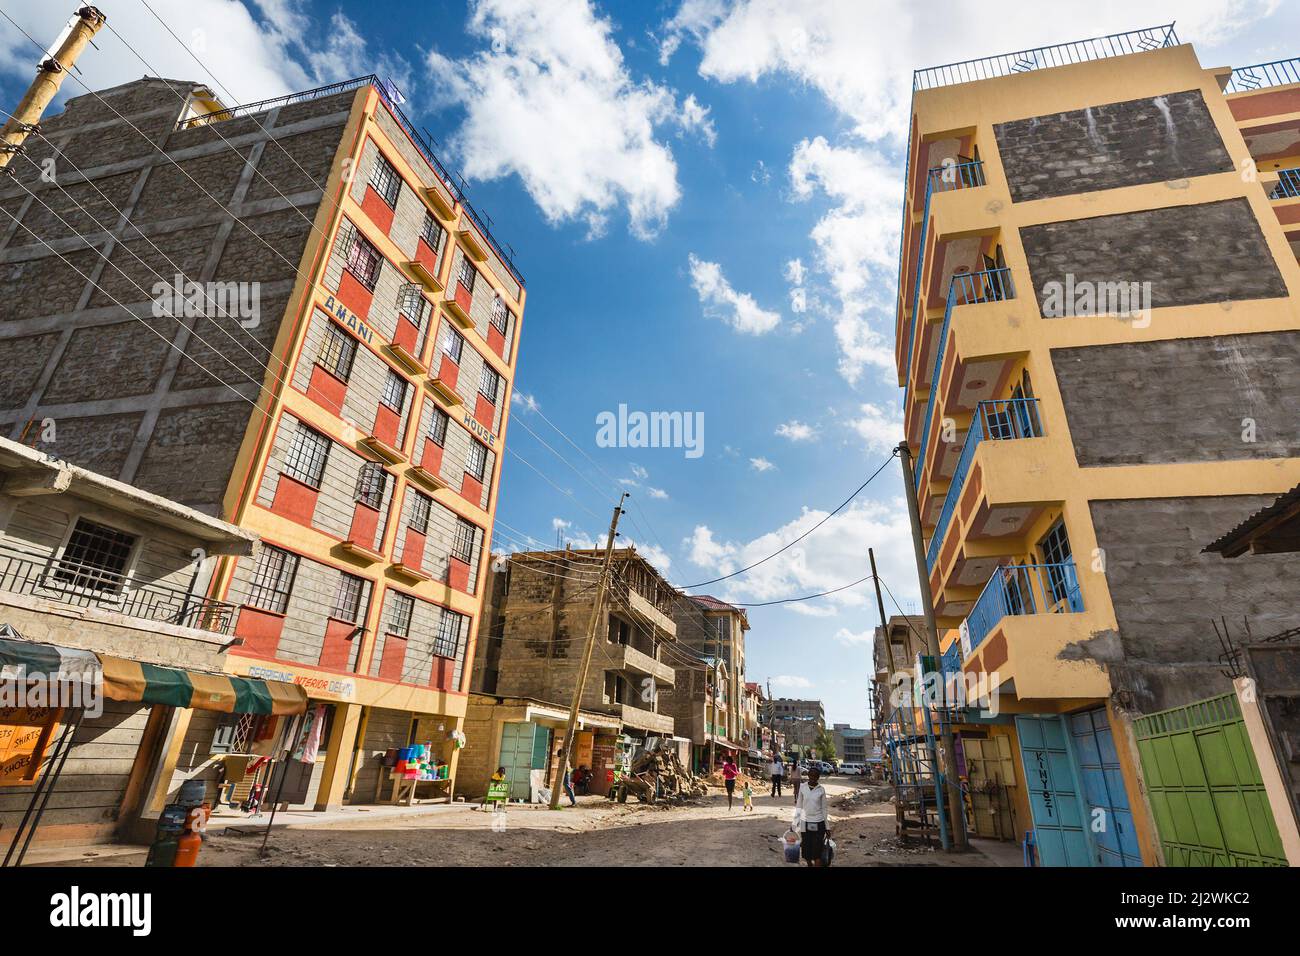 NAIROBI - DÉCEMBRE 21: Rue typique dans le quartier résidentiel de niveau moyen Tassia à l'est de Nairobi, Kenya le 21 décembre 2015 Banque D'Images